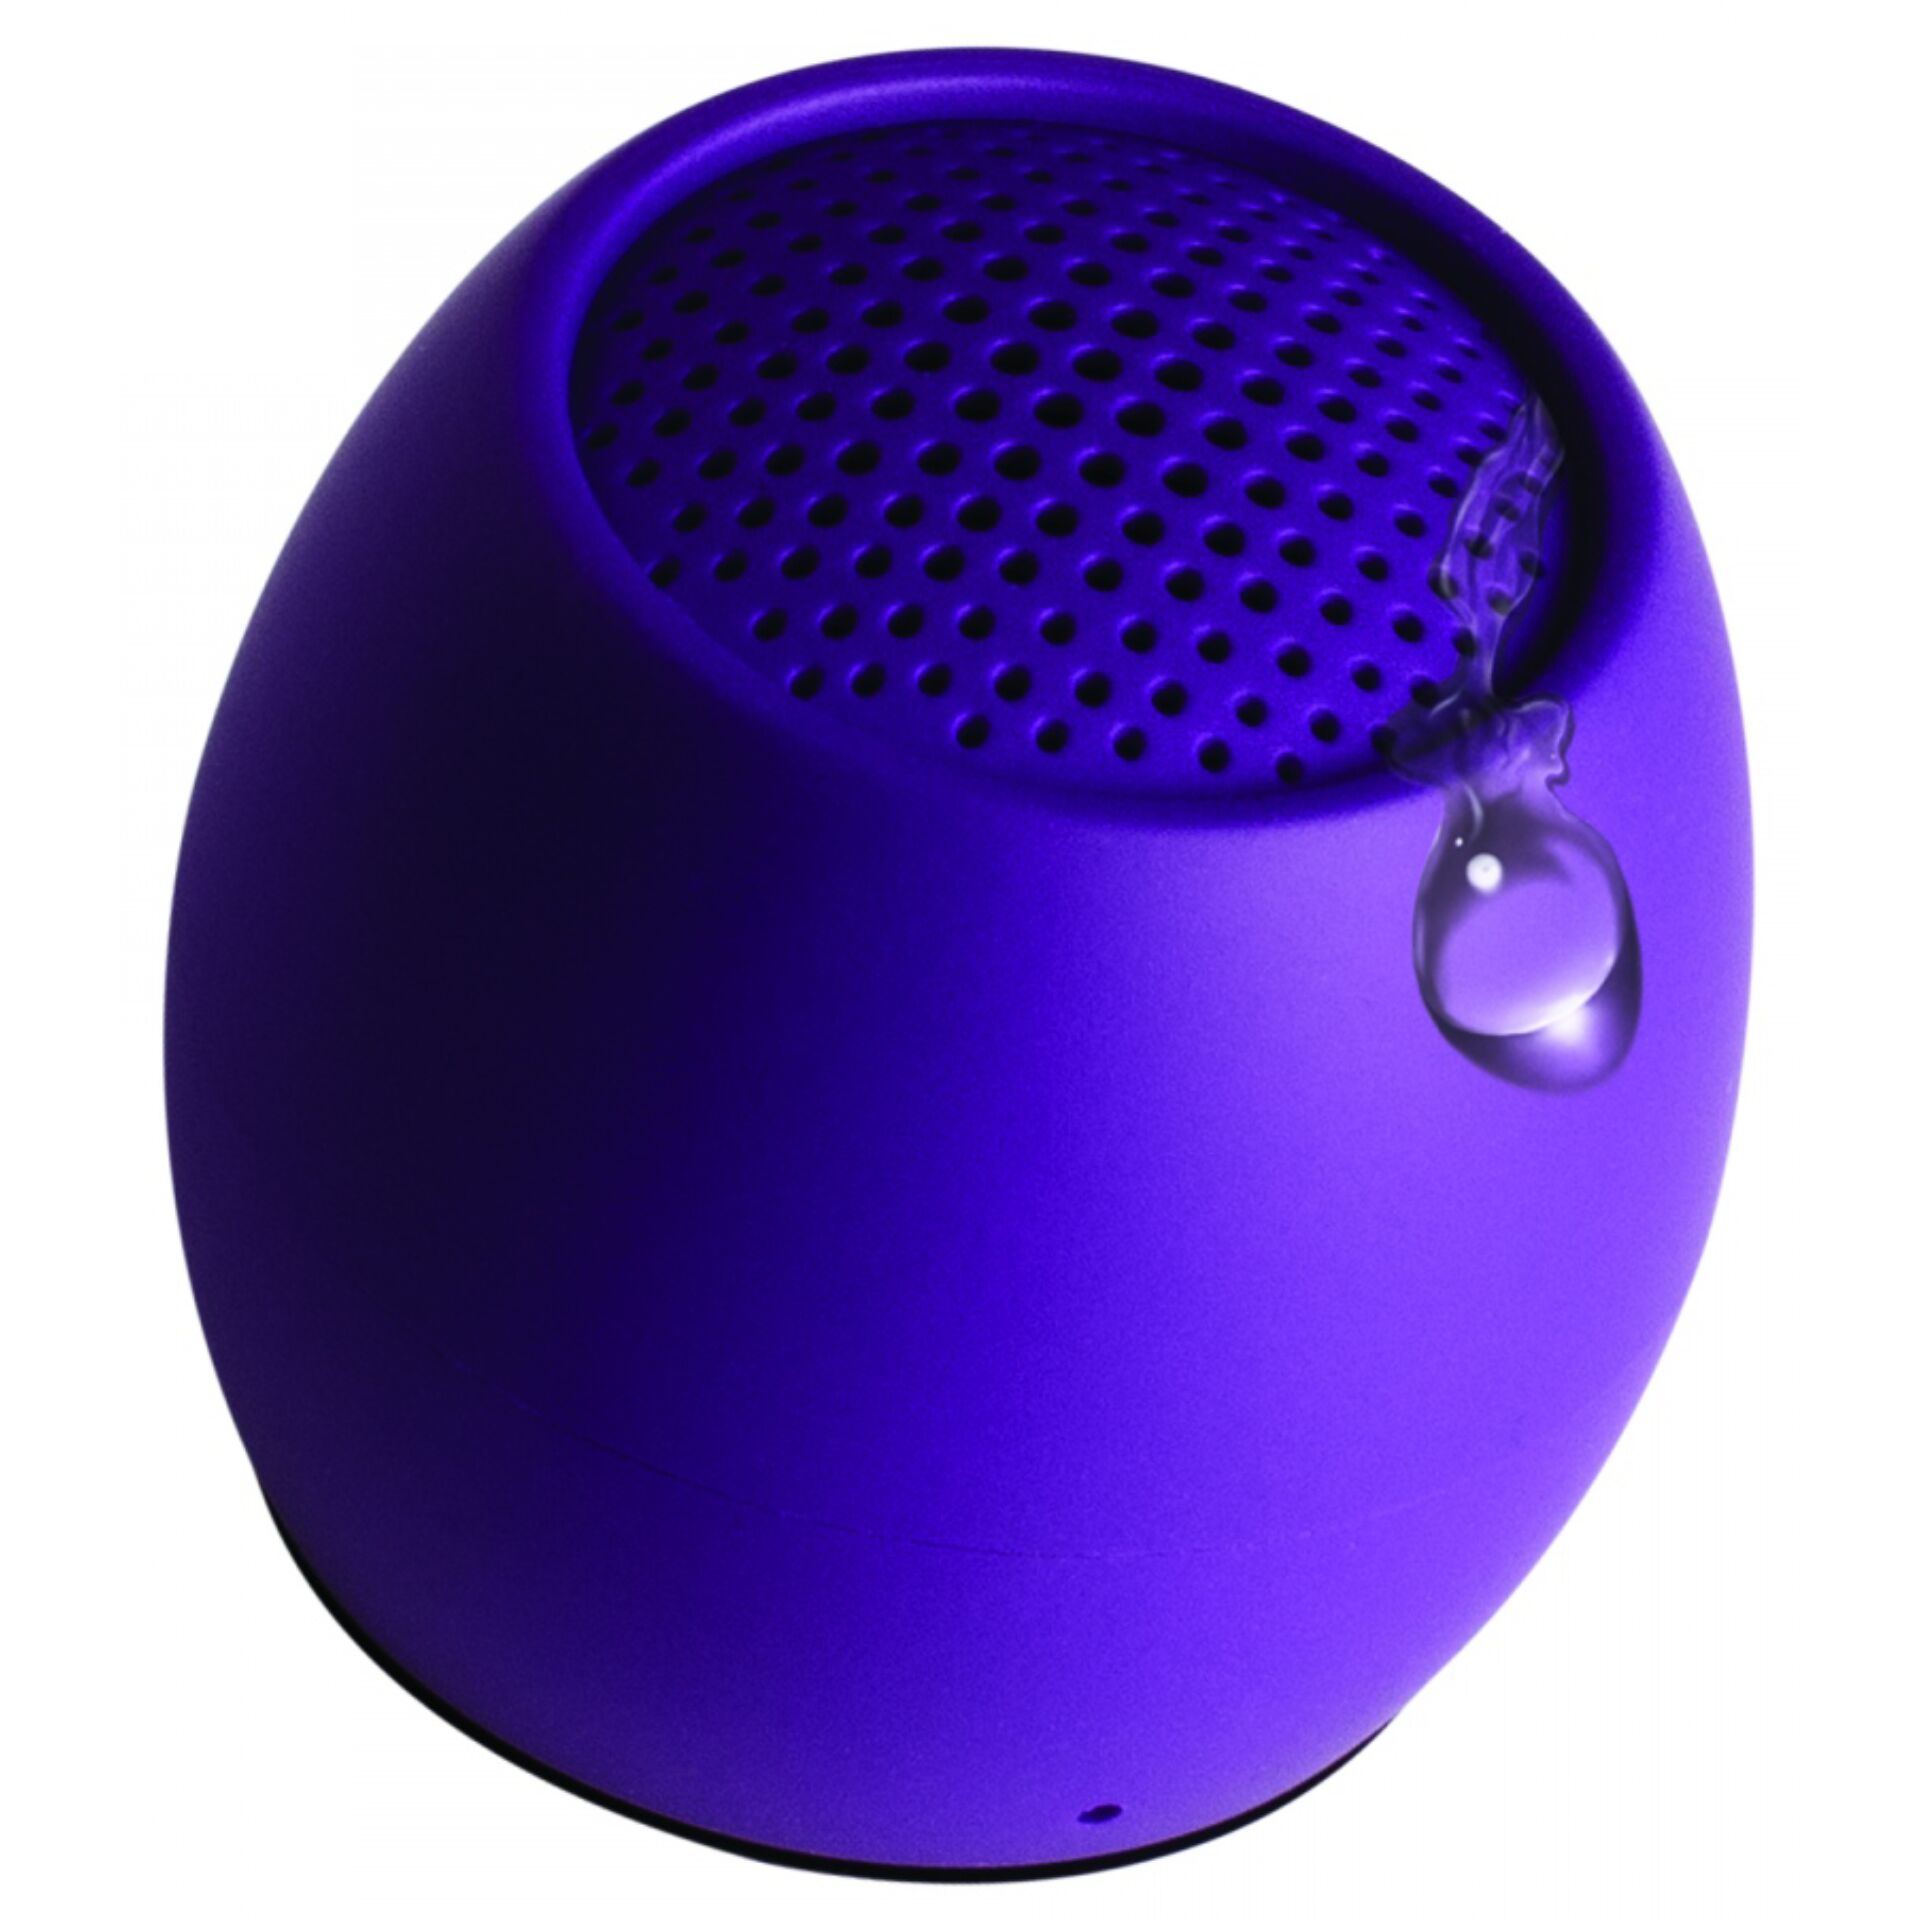 Boompods Zero Speaker Tragbarer Mono-Lautsprecher Violett 3 W